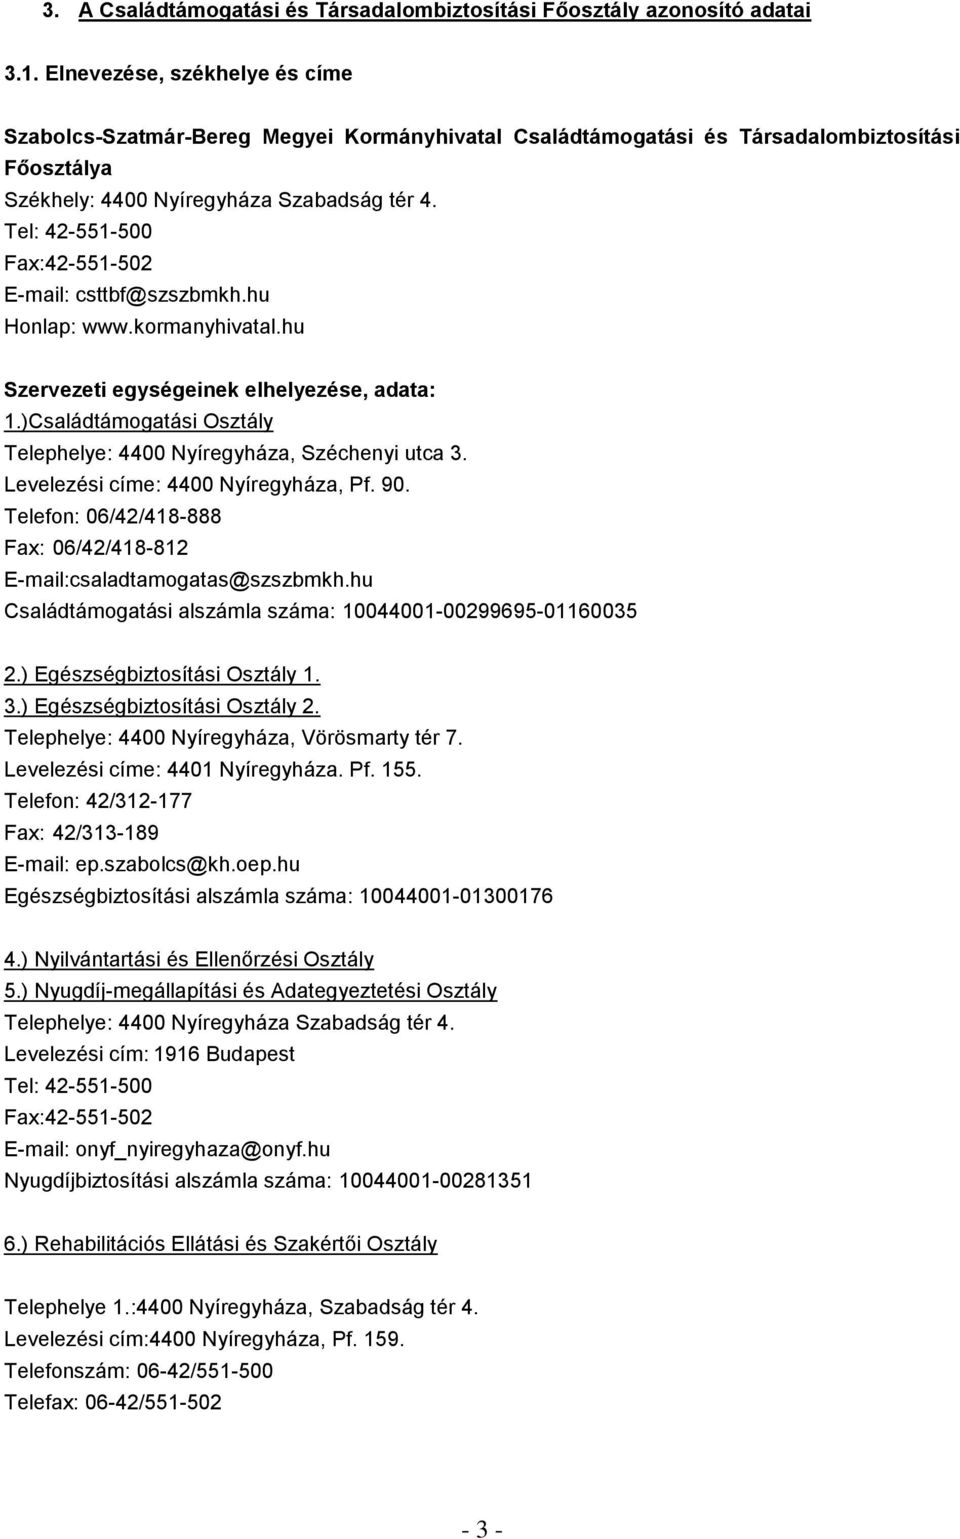 Szabolcs-Szatmár-Bereg Megyei Kormányhivatal Családtámogatási és  Társadalombiztosítási Főosztály - PDF Free Download